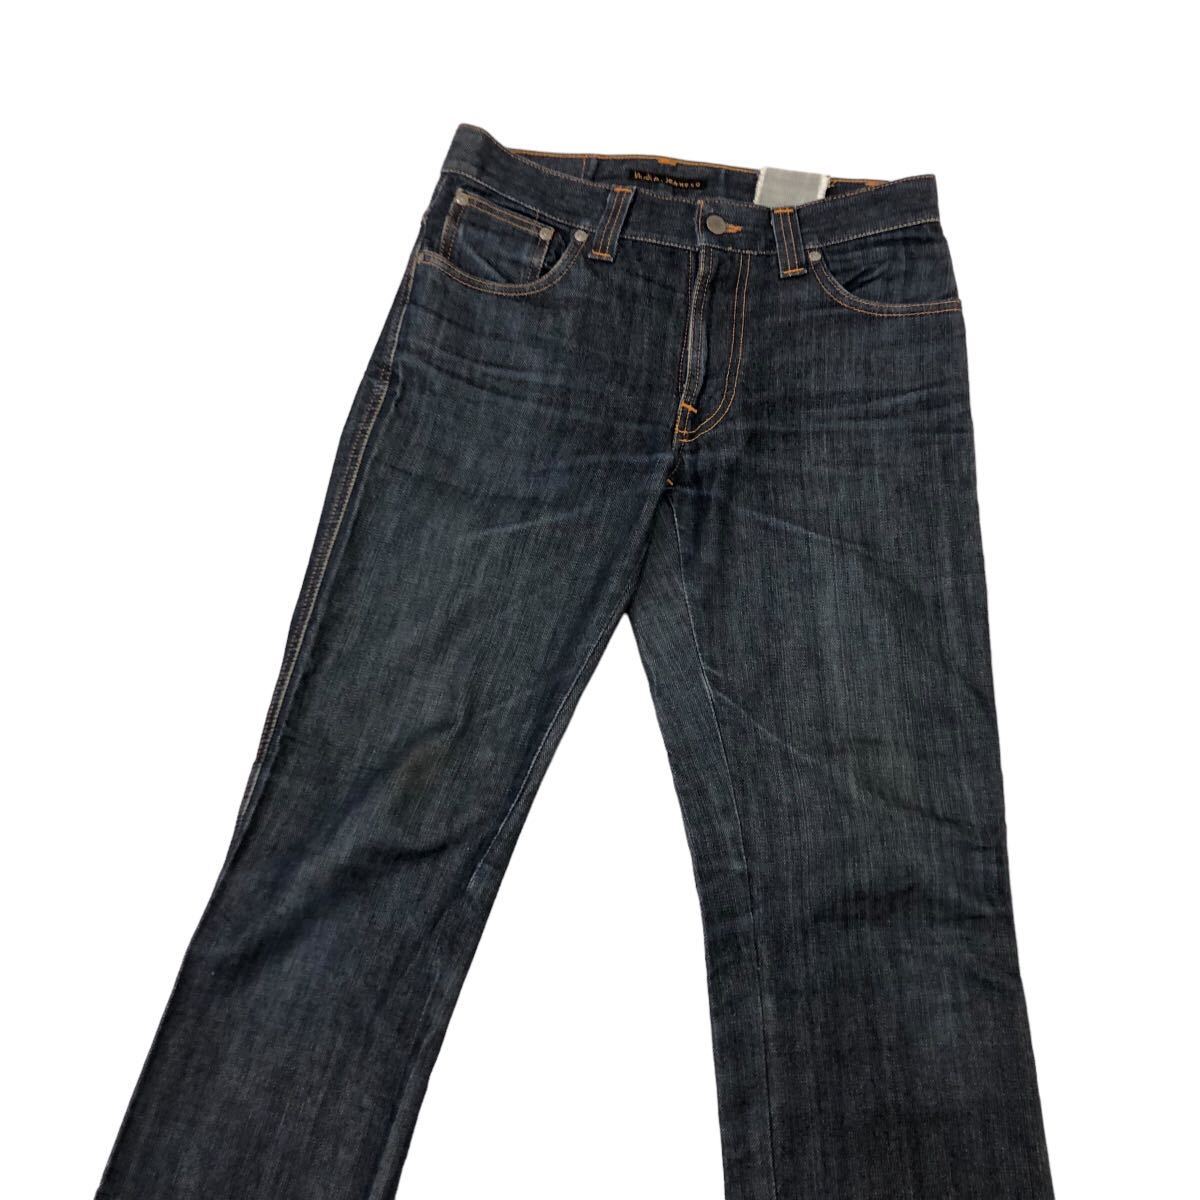 H716 Nudie Jeans ヌーディージーンズ NJ1461 DRY デニム パンツ Gパン ジーンズ ネイビー系 ブルー系 綿100% メンズ 30_画像2